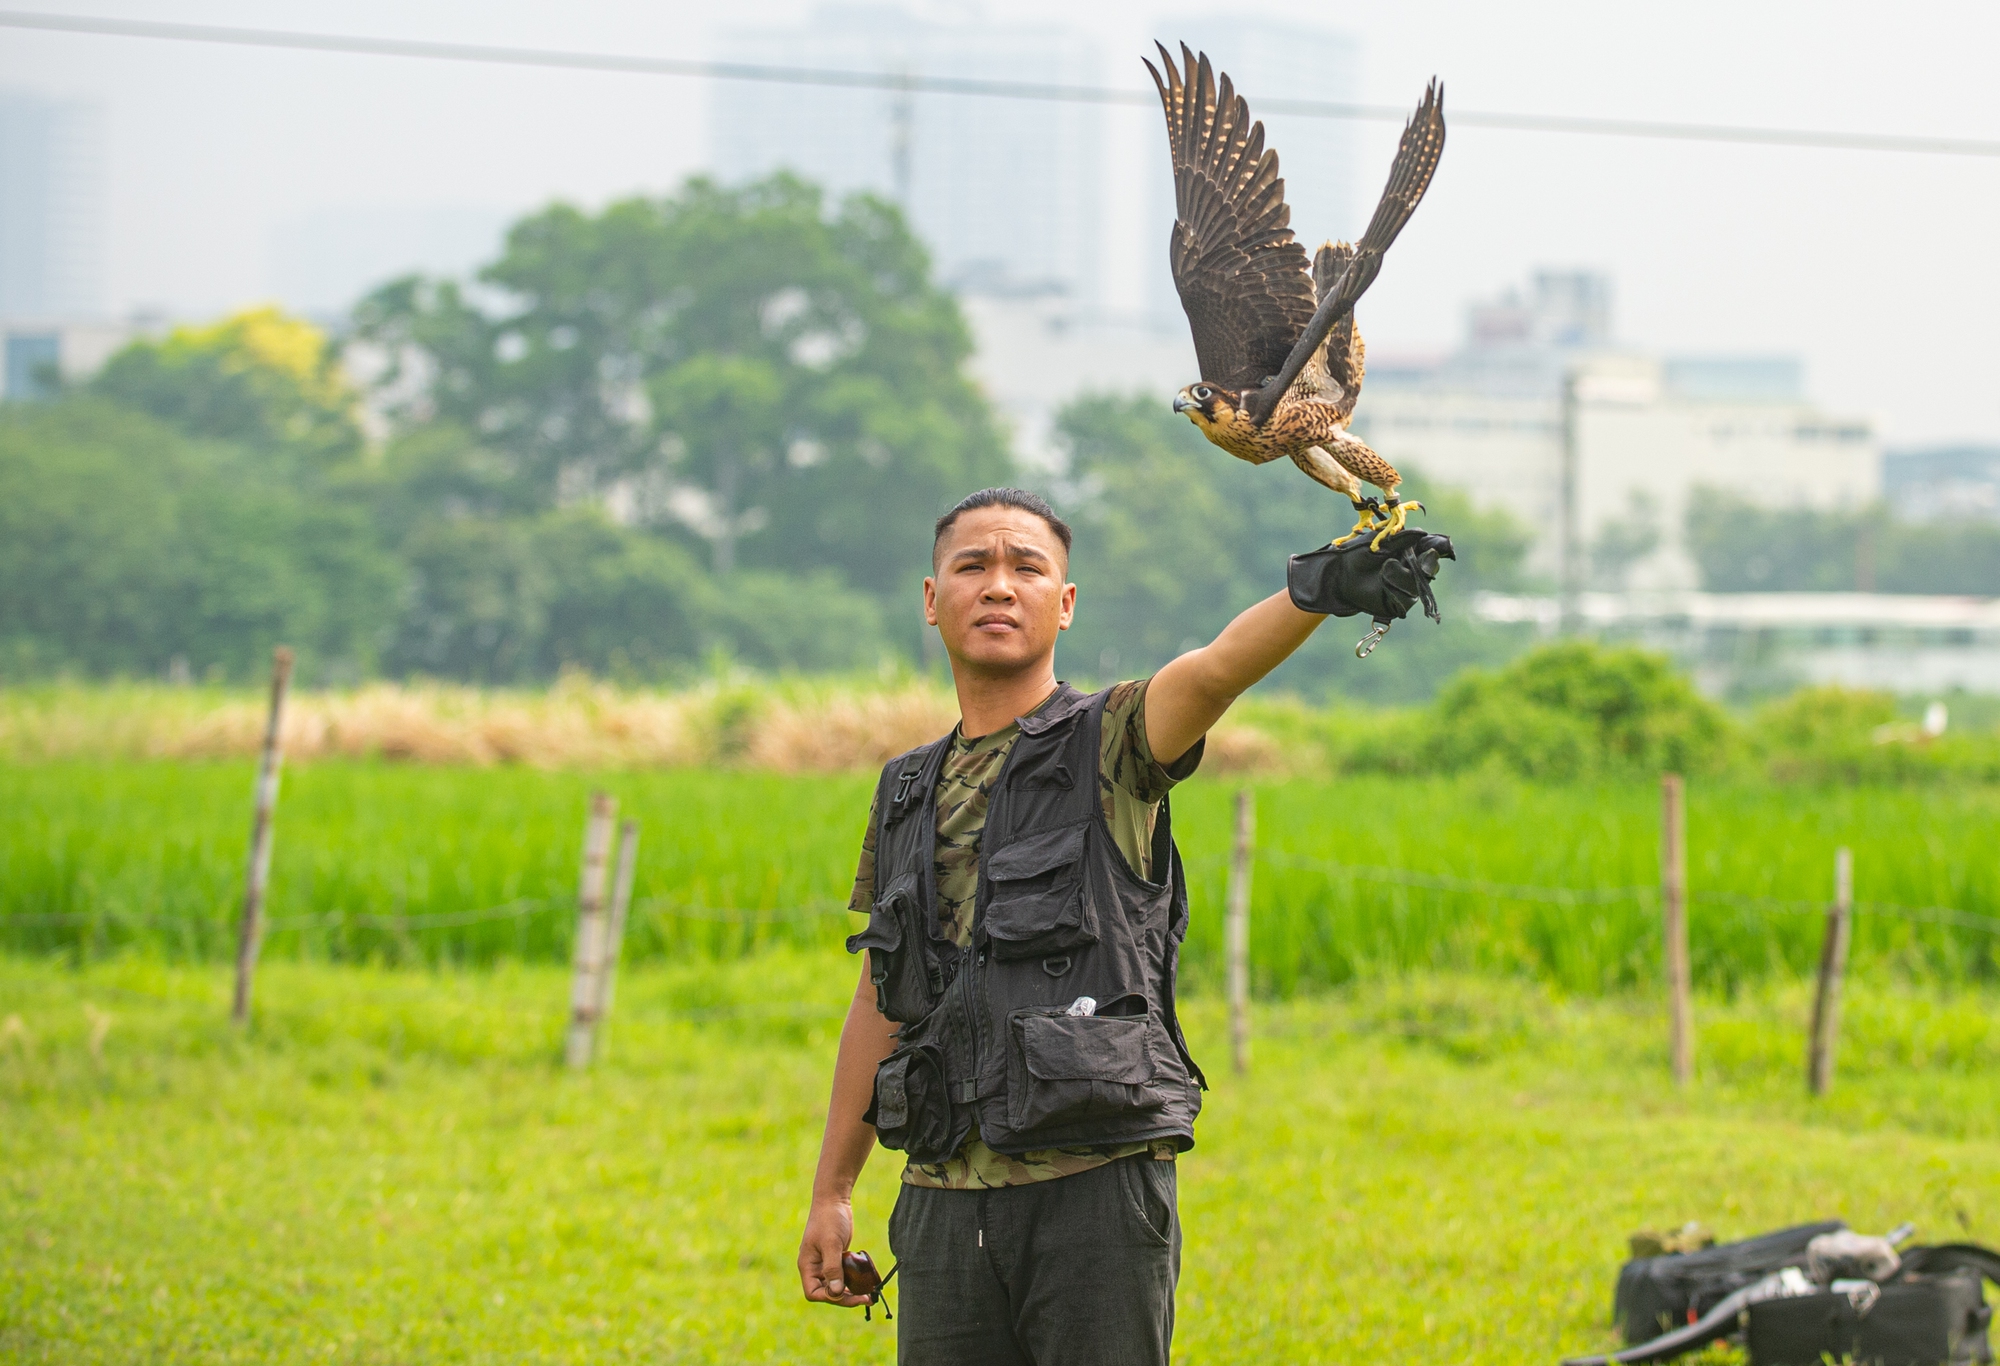 Ảnh: Dùng flycam, định vị GPS, tiêu tốn hàng chục triệu huấn luyện chim săn mồi để giải trí - Ảnh 5.